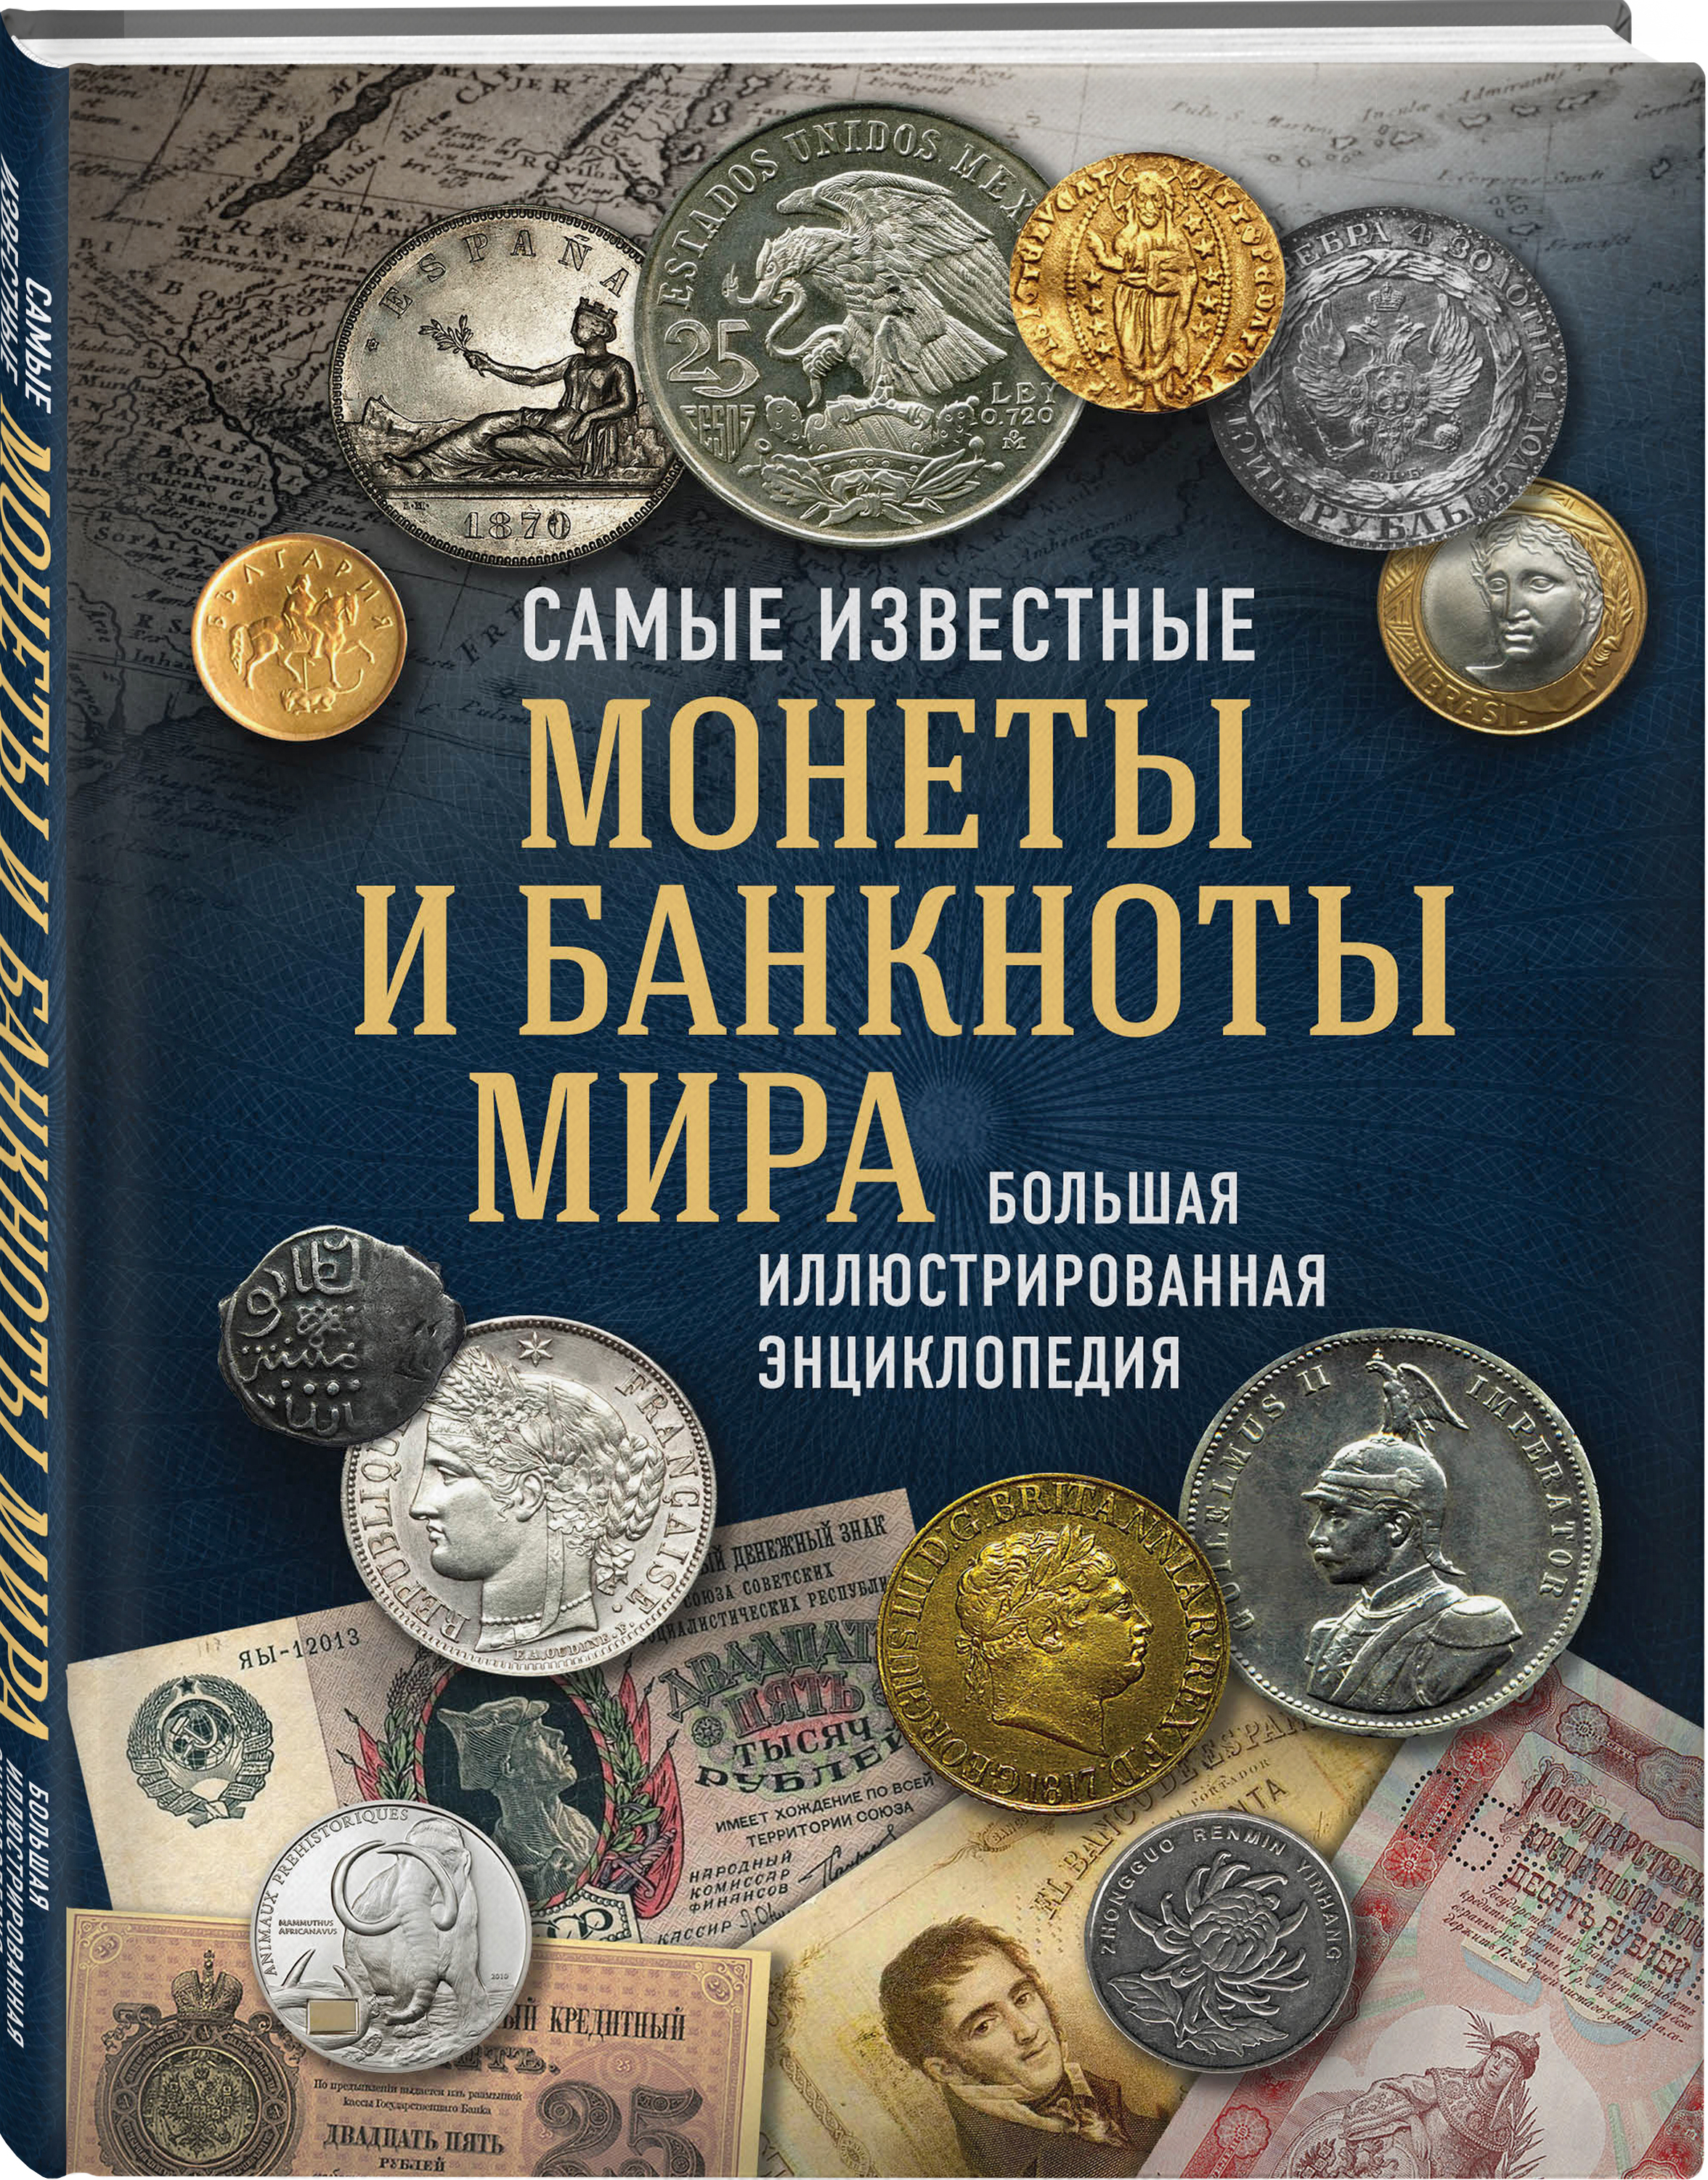 Первая известная монета. Книга Ларин Подольский монеты и банкноты России. Большая энциклопедия монет и банкнот. Моне самые известные.